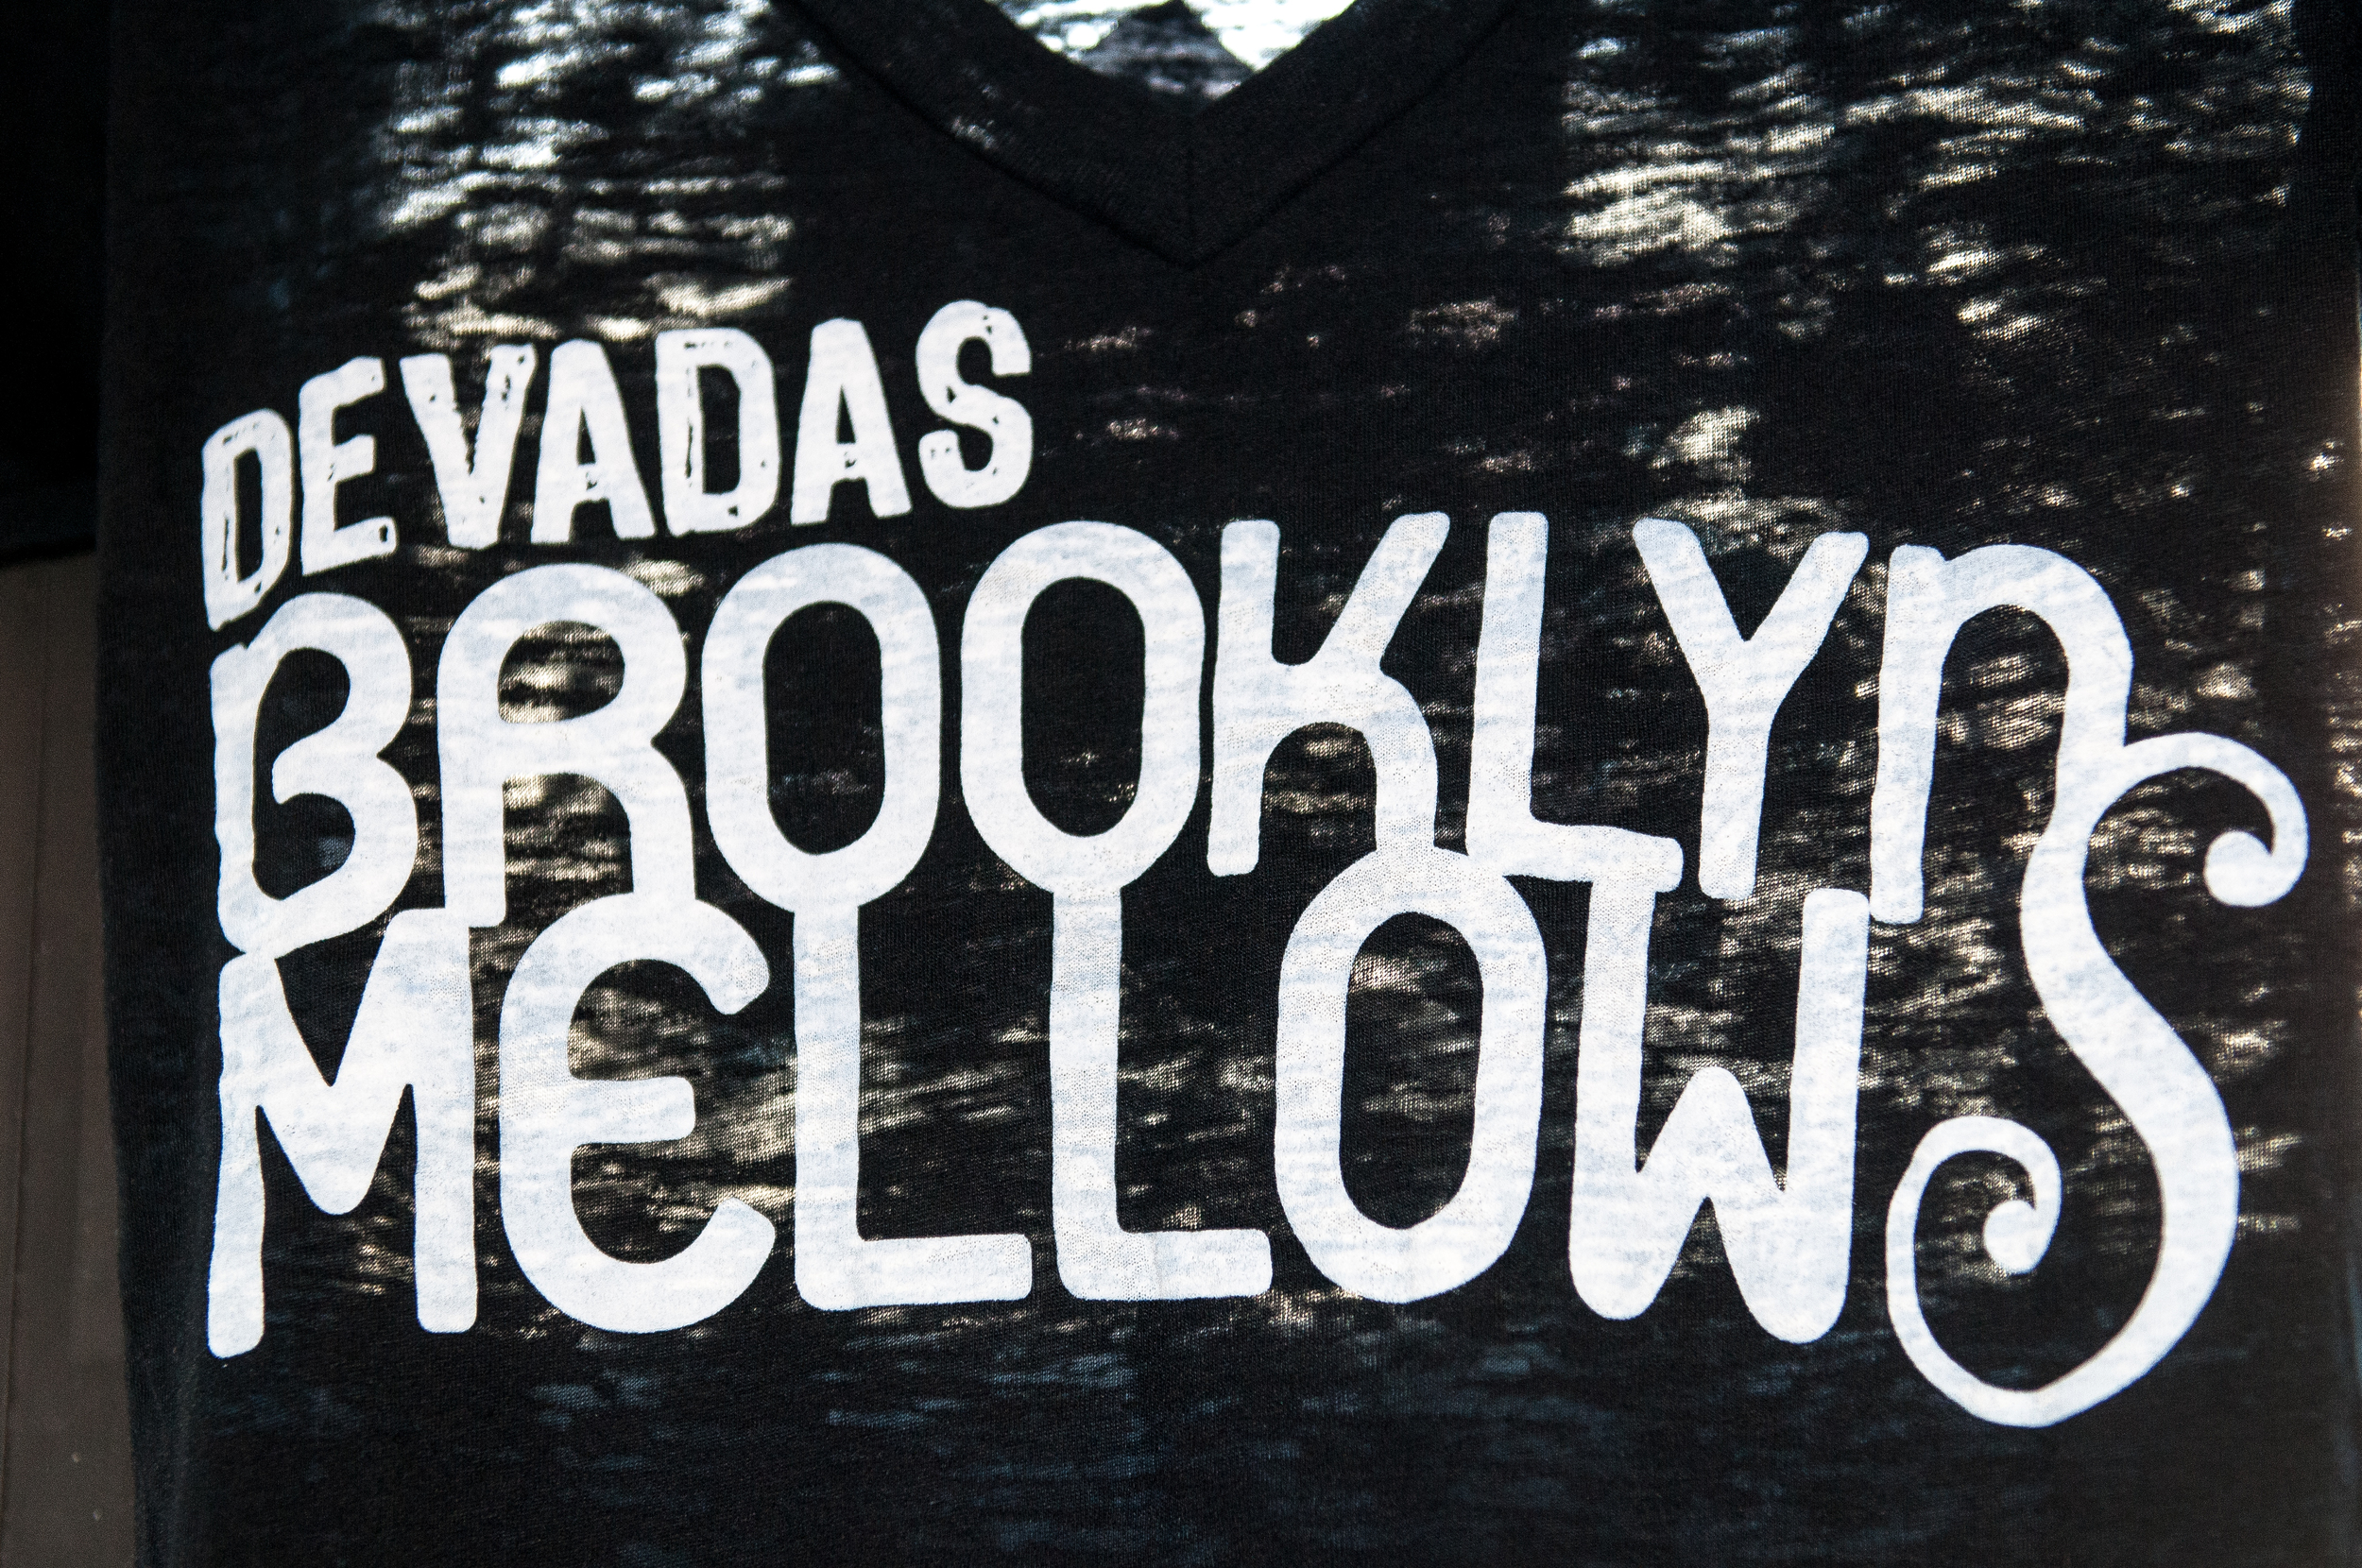 Devadas's Brooklyn Mellows CD Release Party @ Brooklyn Yoga School-4.jpg